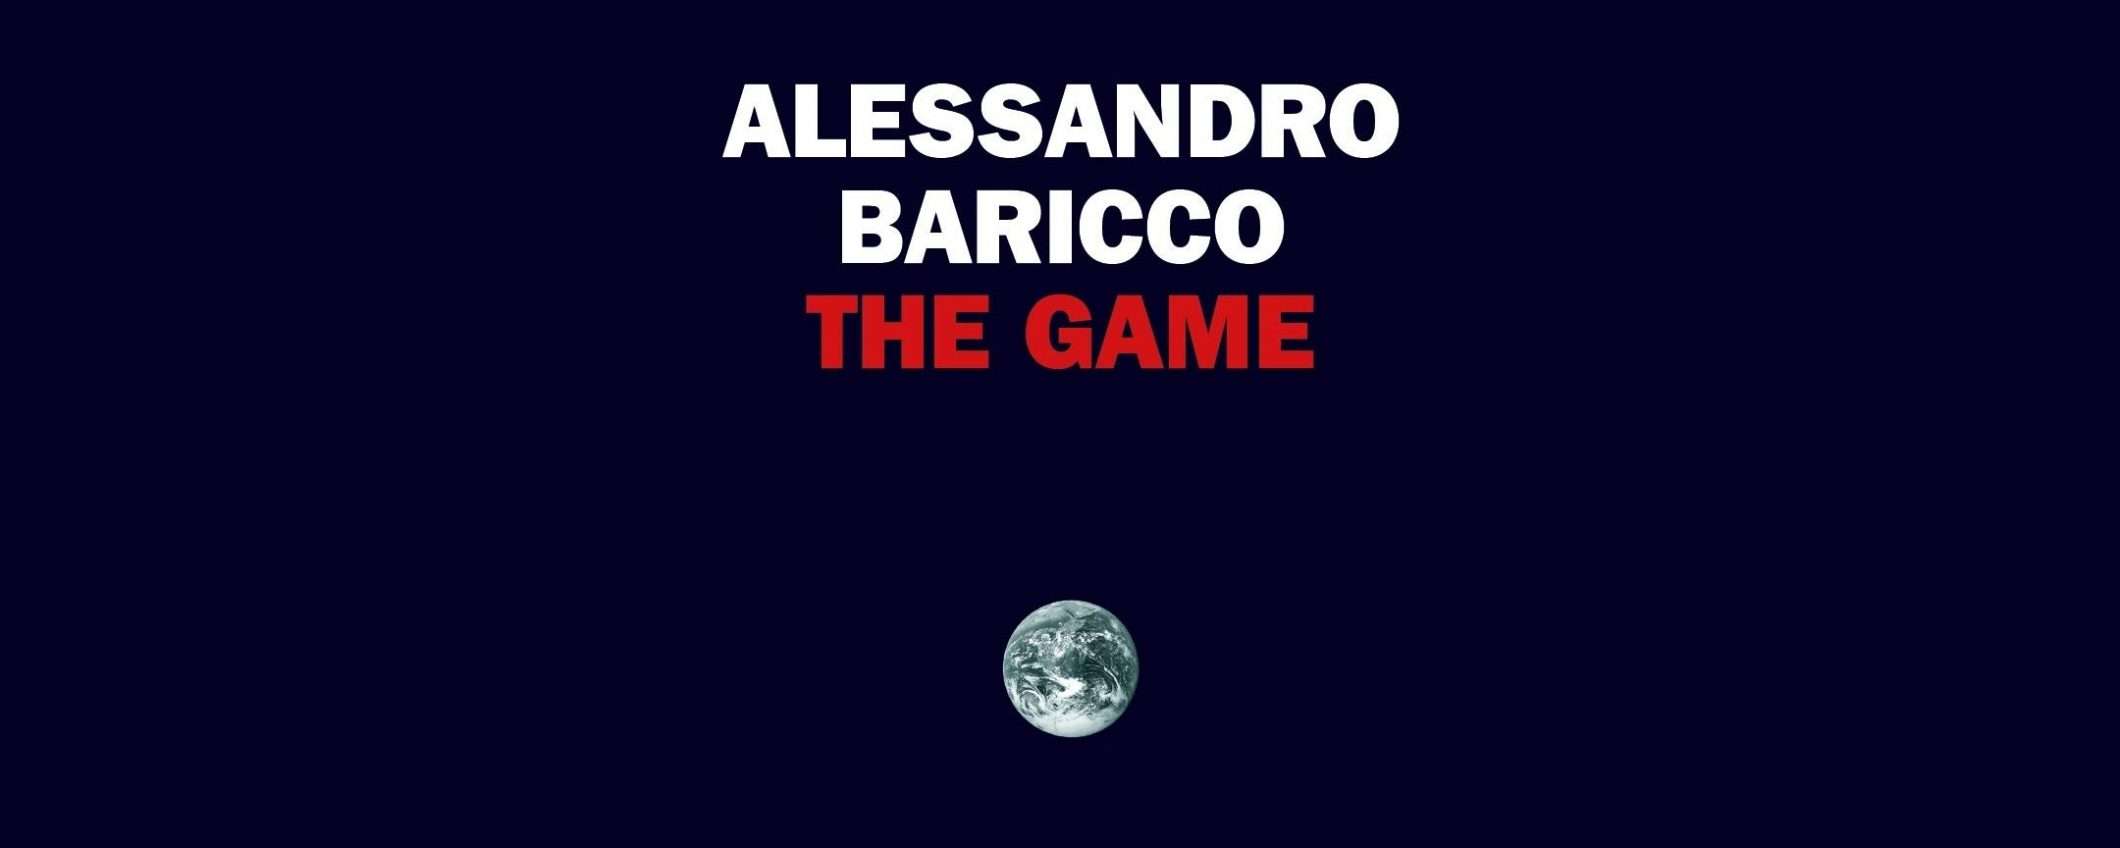 The Game: il saggio di Baricco è un capolavoro